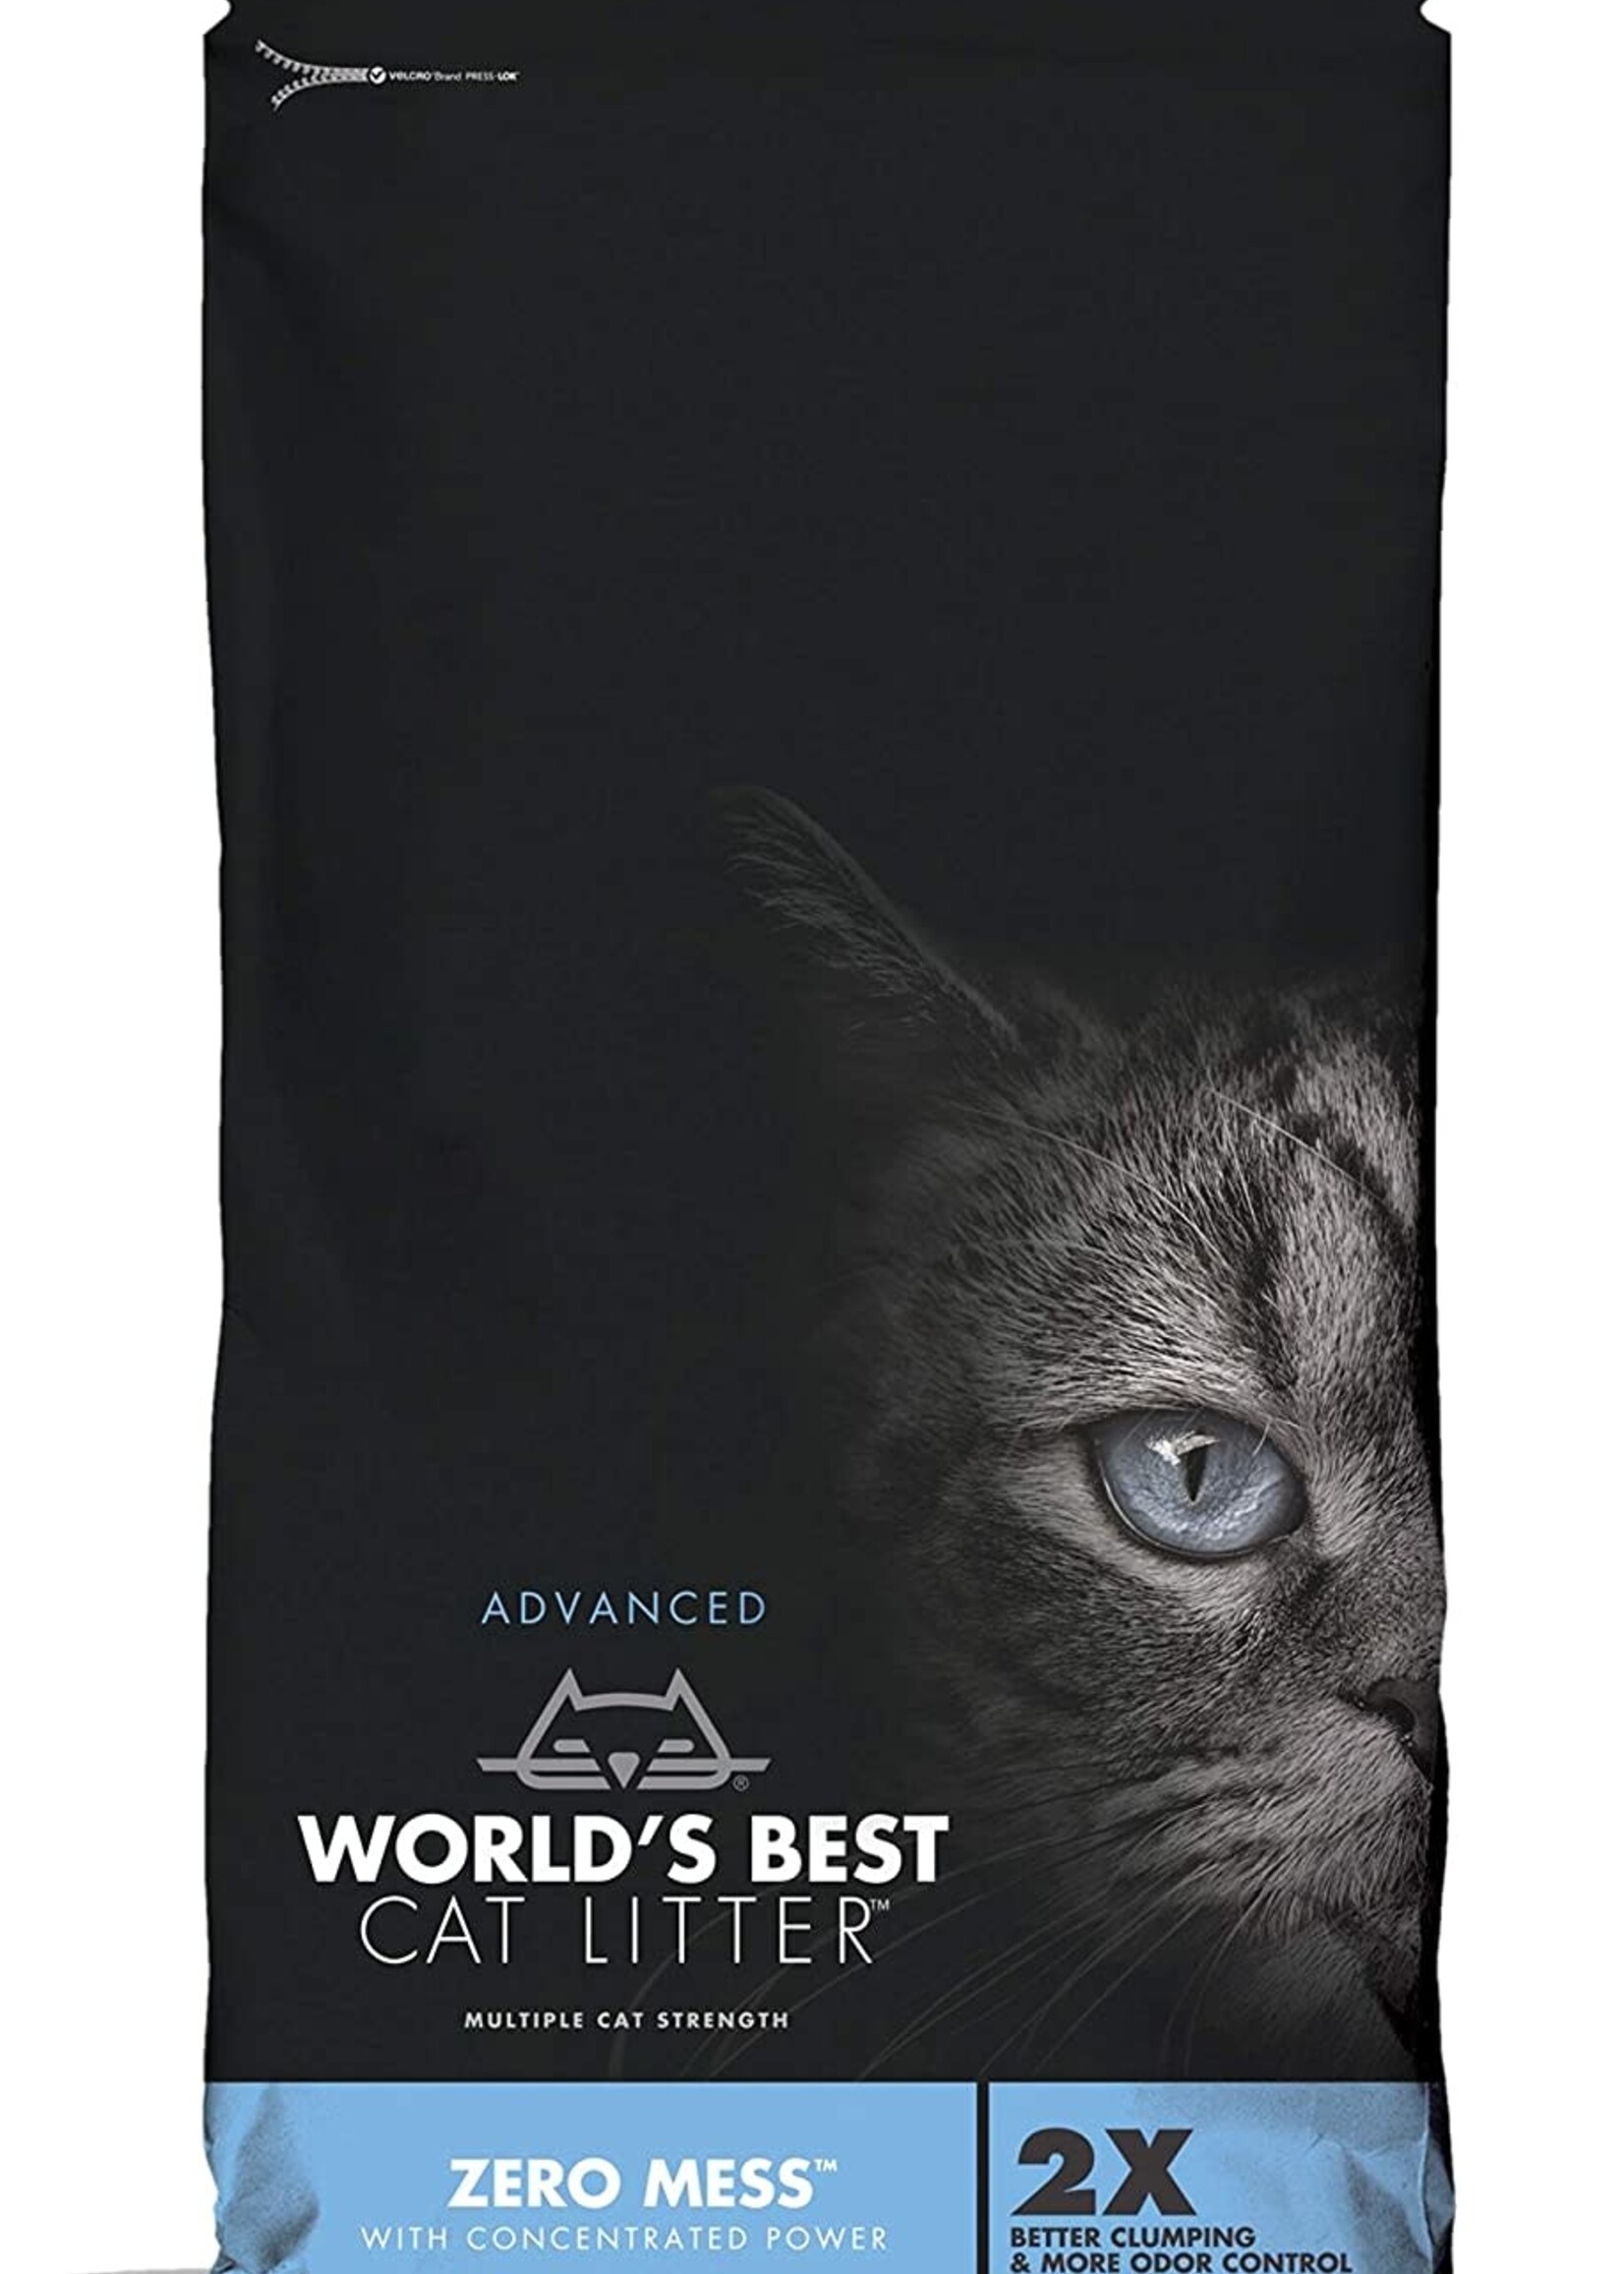 World's Best Cat Litter World's Best Cat Litter Zero Mess Unscented Cat Clumping Corn Litter